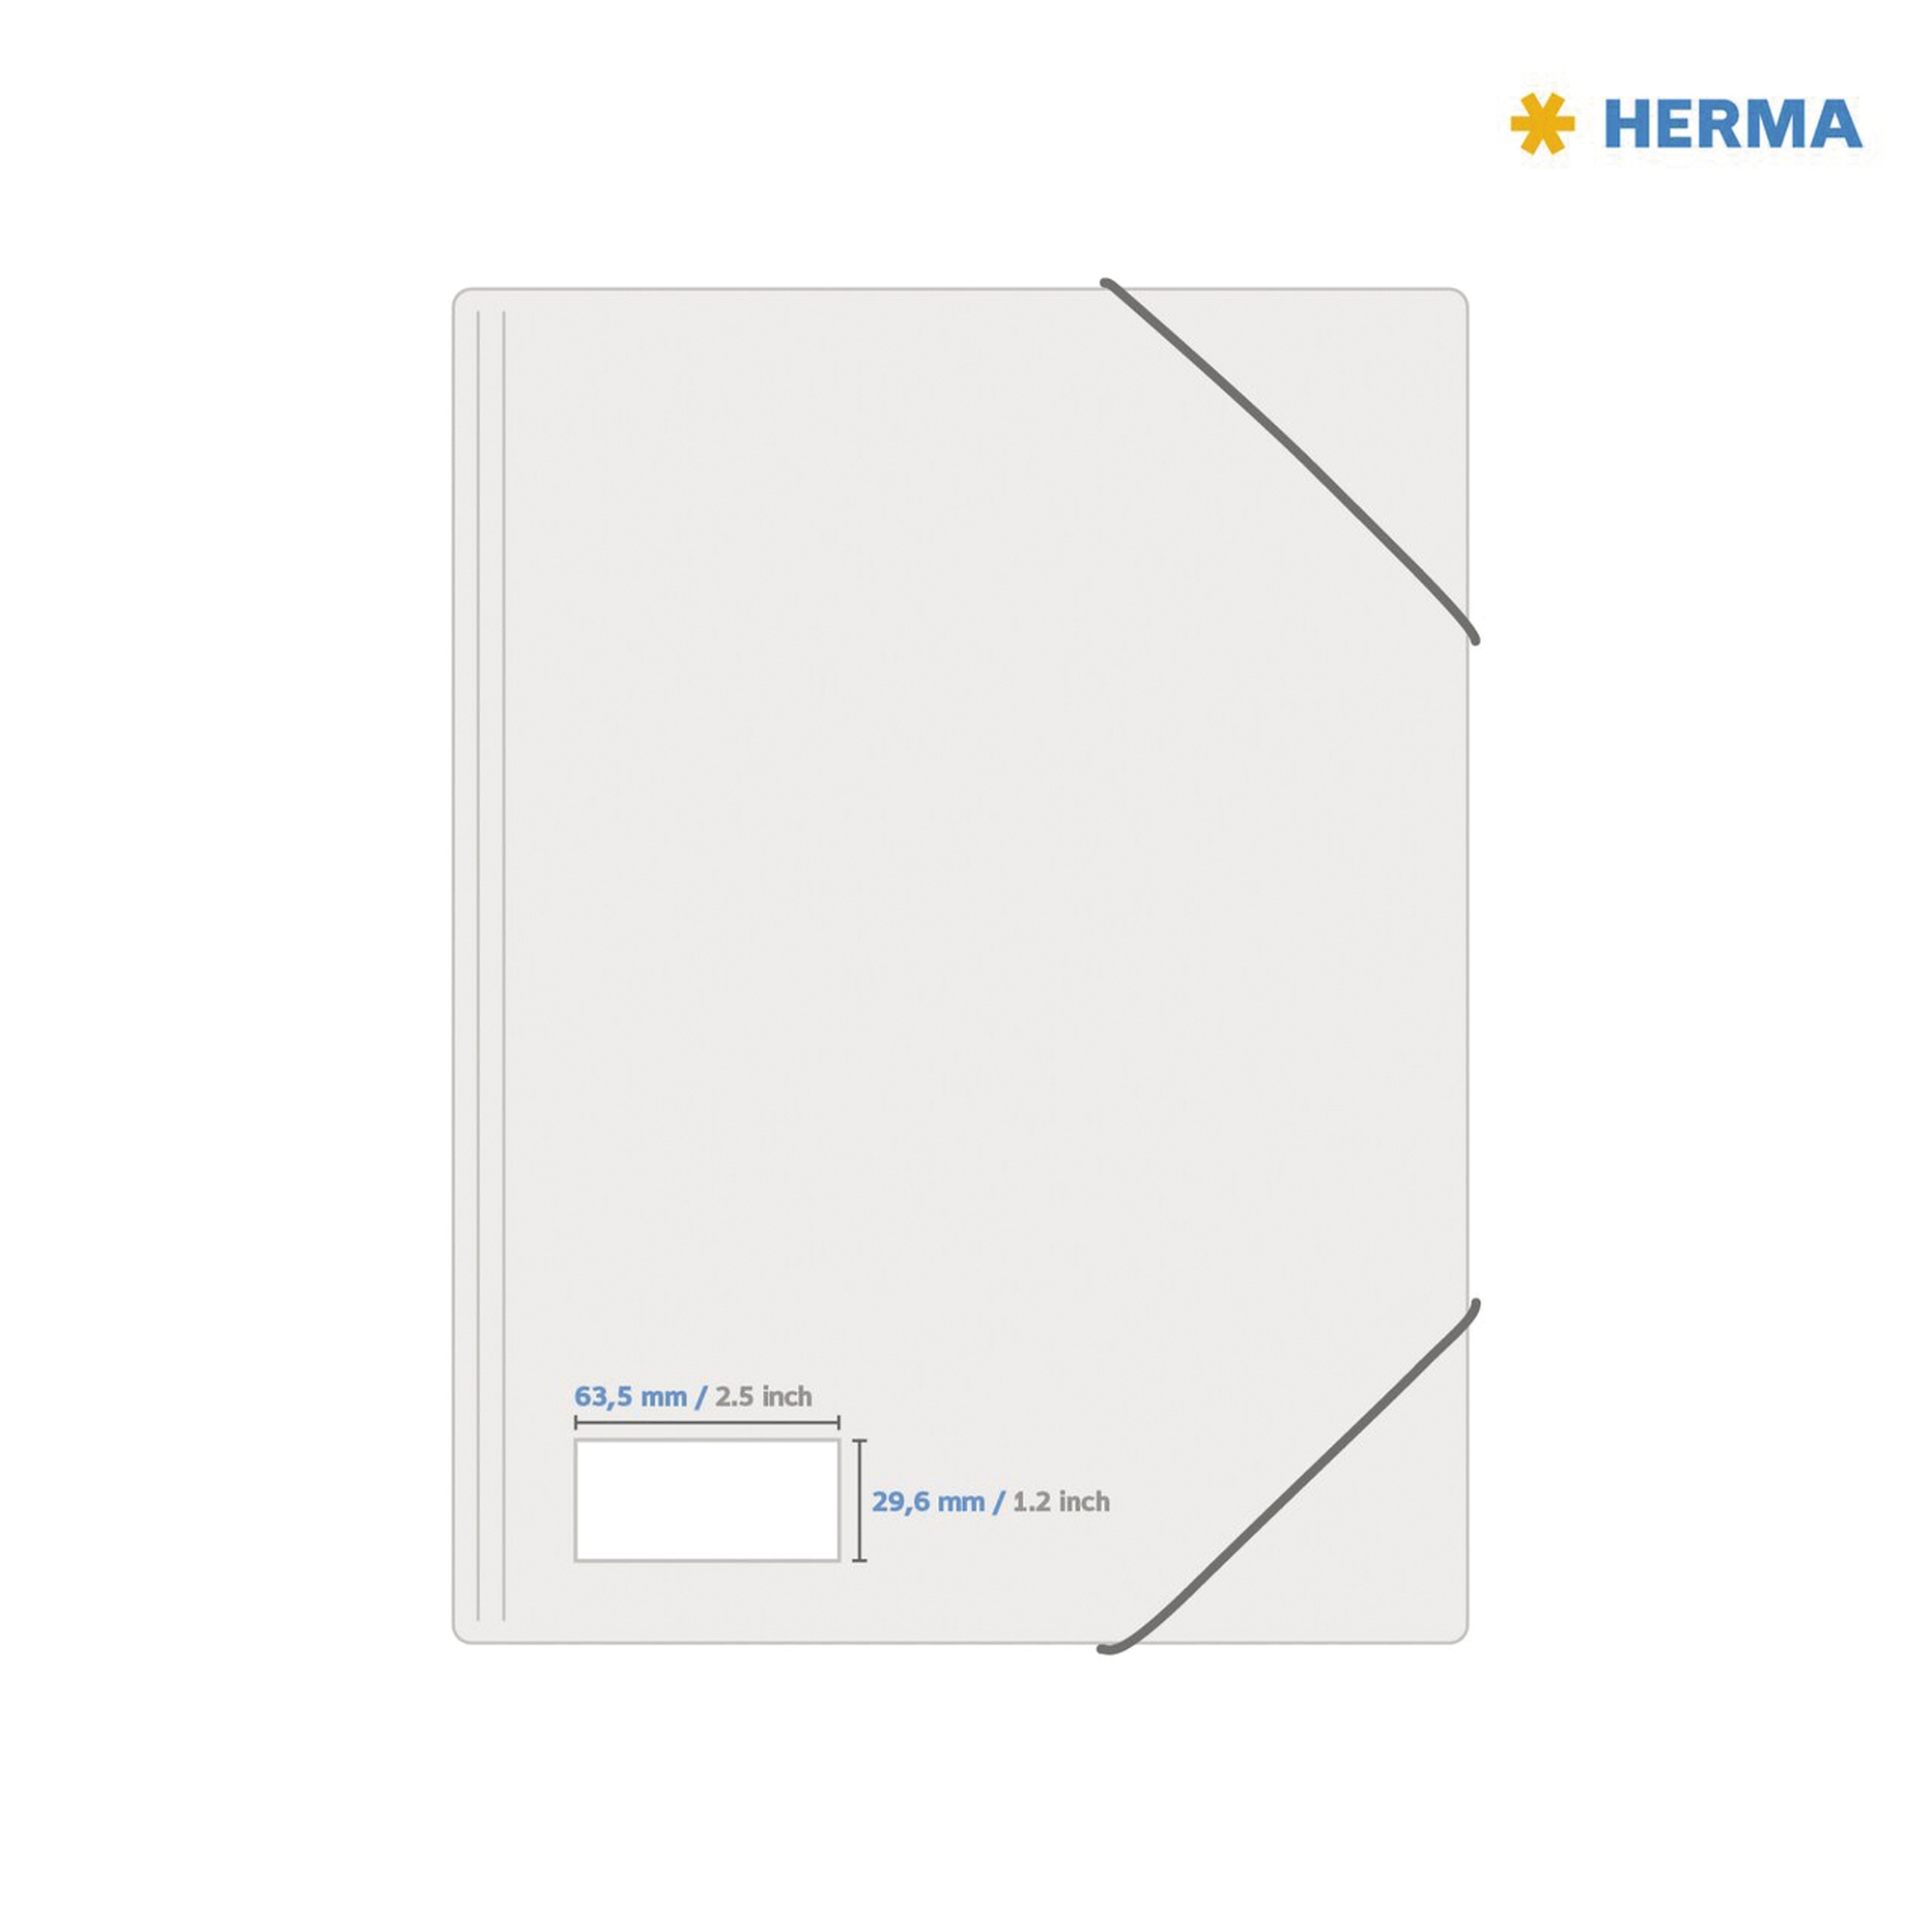 HERMA Typenschildetikett SPECIAL 63,5 x 29,6 mm 25 Bl./Pack.